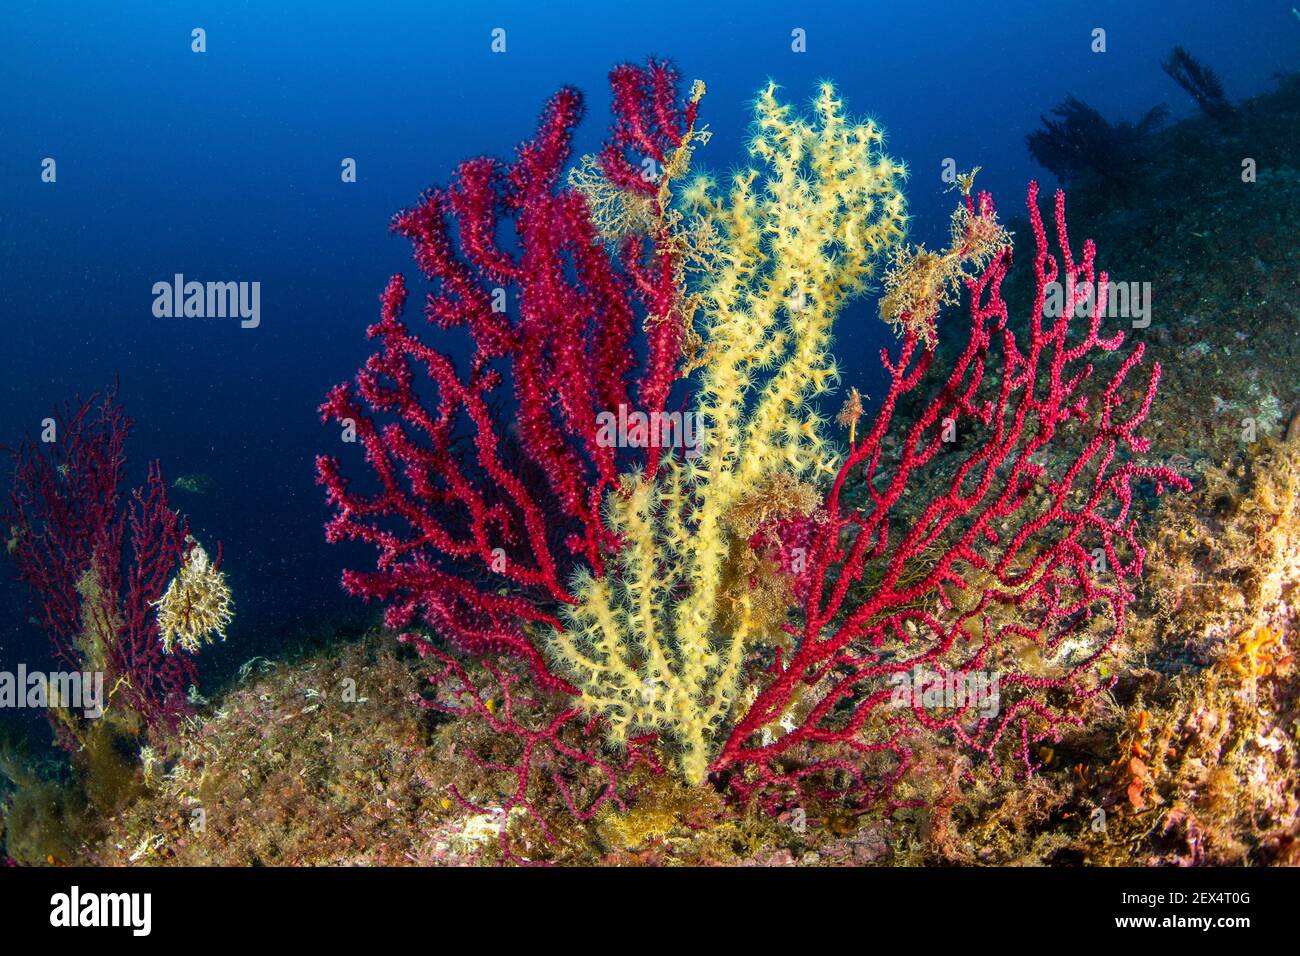 A slow predation, the false cblack coral (Savalia Savaglia) against the red gorgonian (Paramuricea clavata) Marine Protected area Punta Campanella, Ma Stock Photo